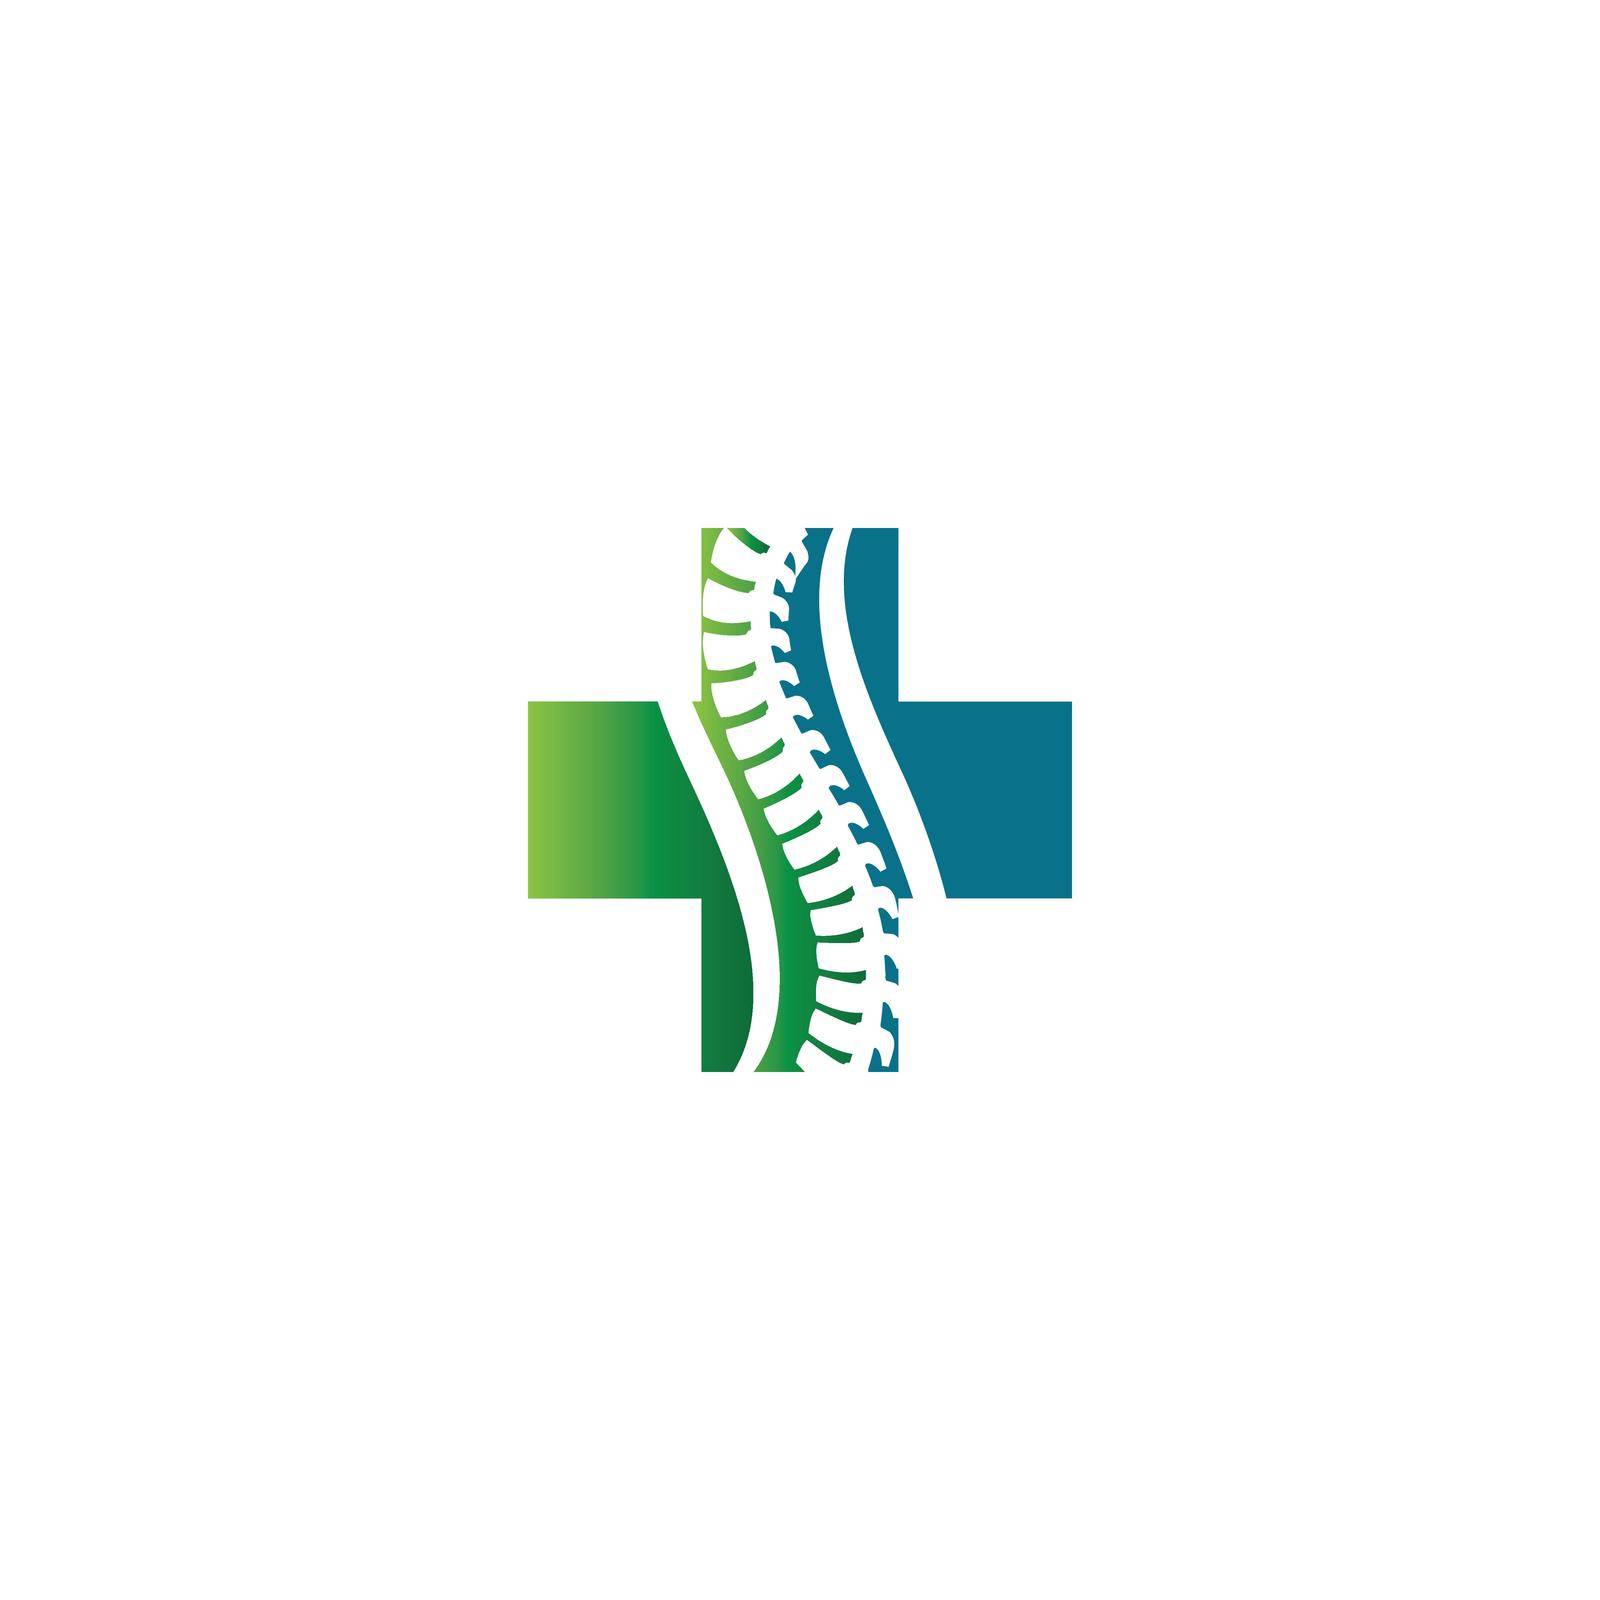 Spine diagnostics symbol by Graphicindo